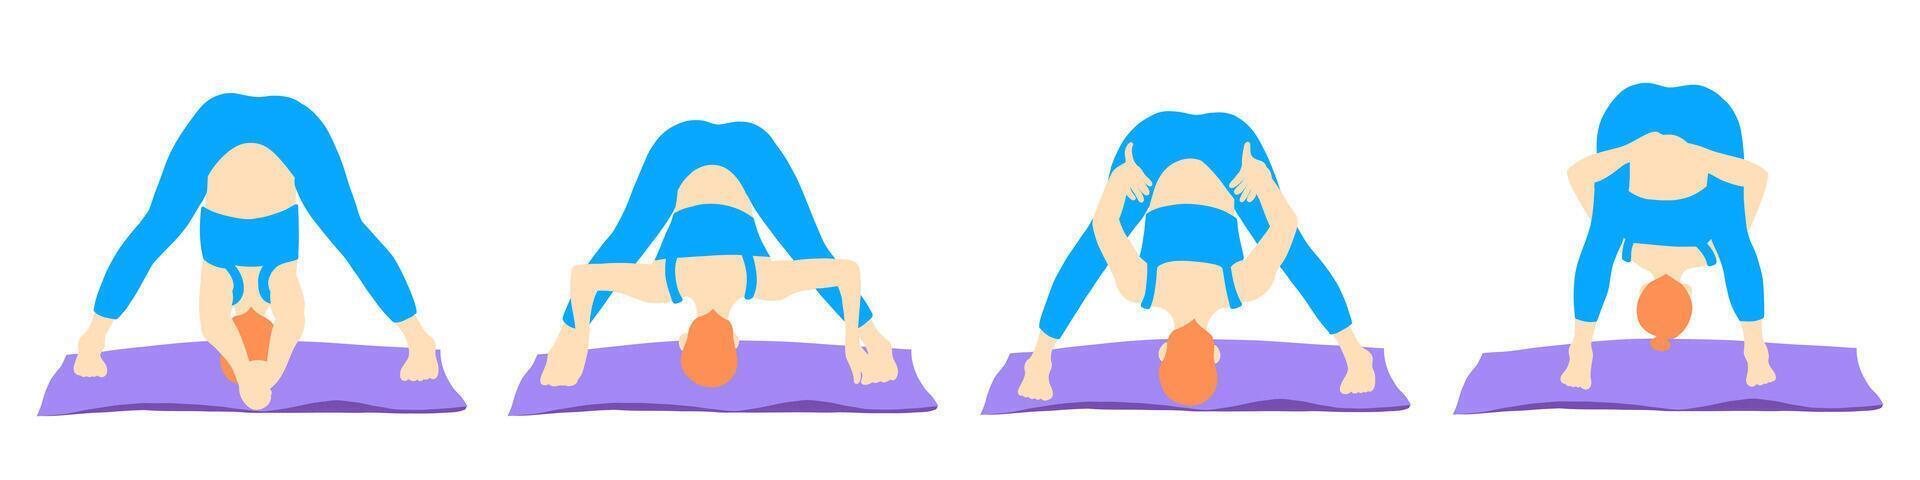 conjunto de yoga poses jengibre niña vector